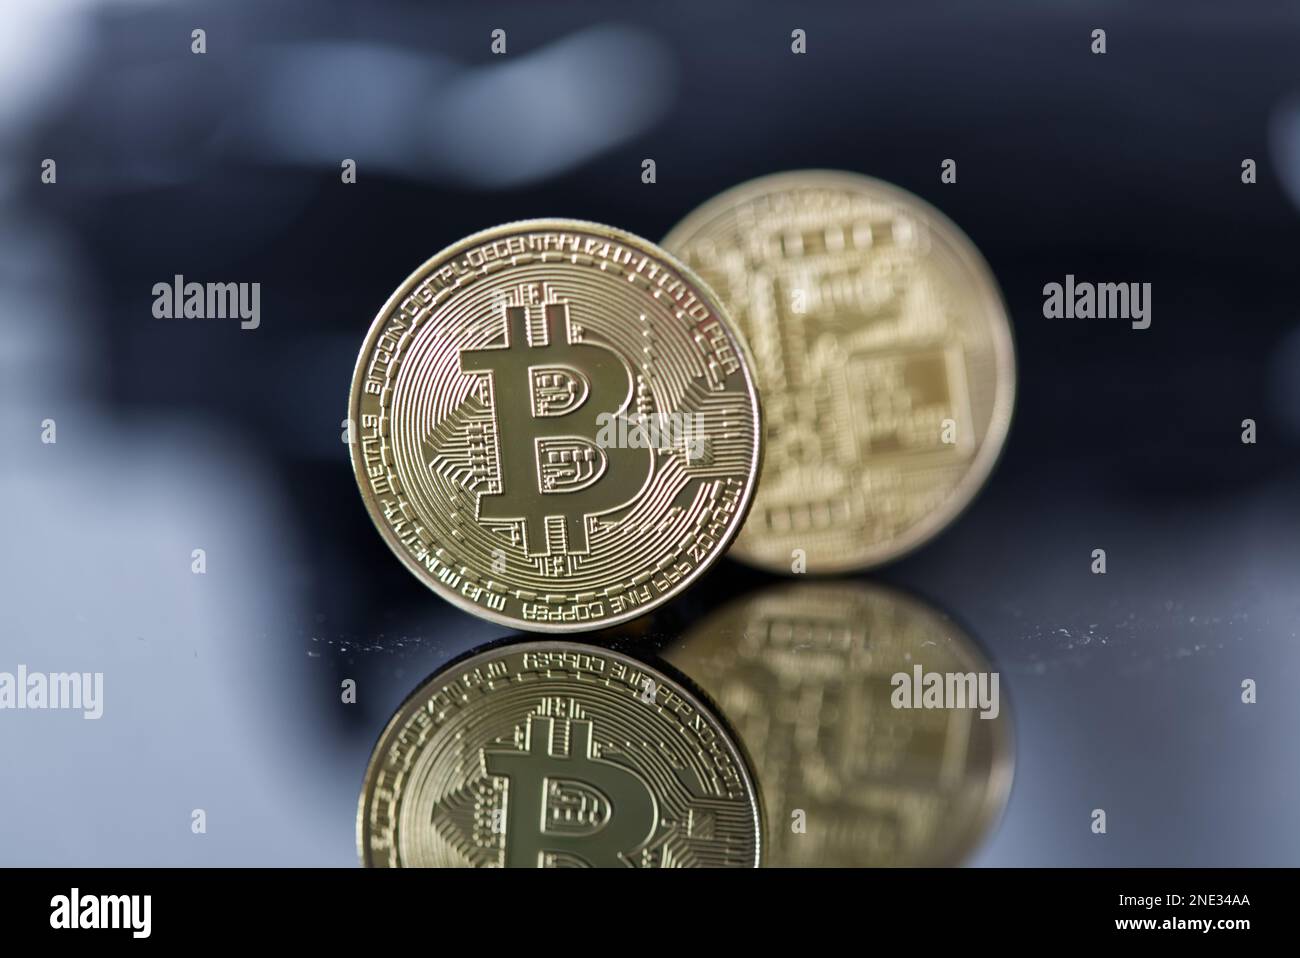 Bitcoin Technology è questo il futuro dei pagamenti? Die Bitcoin Währung, als Zahlungsmittel zukunftssicher? Foto Stock